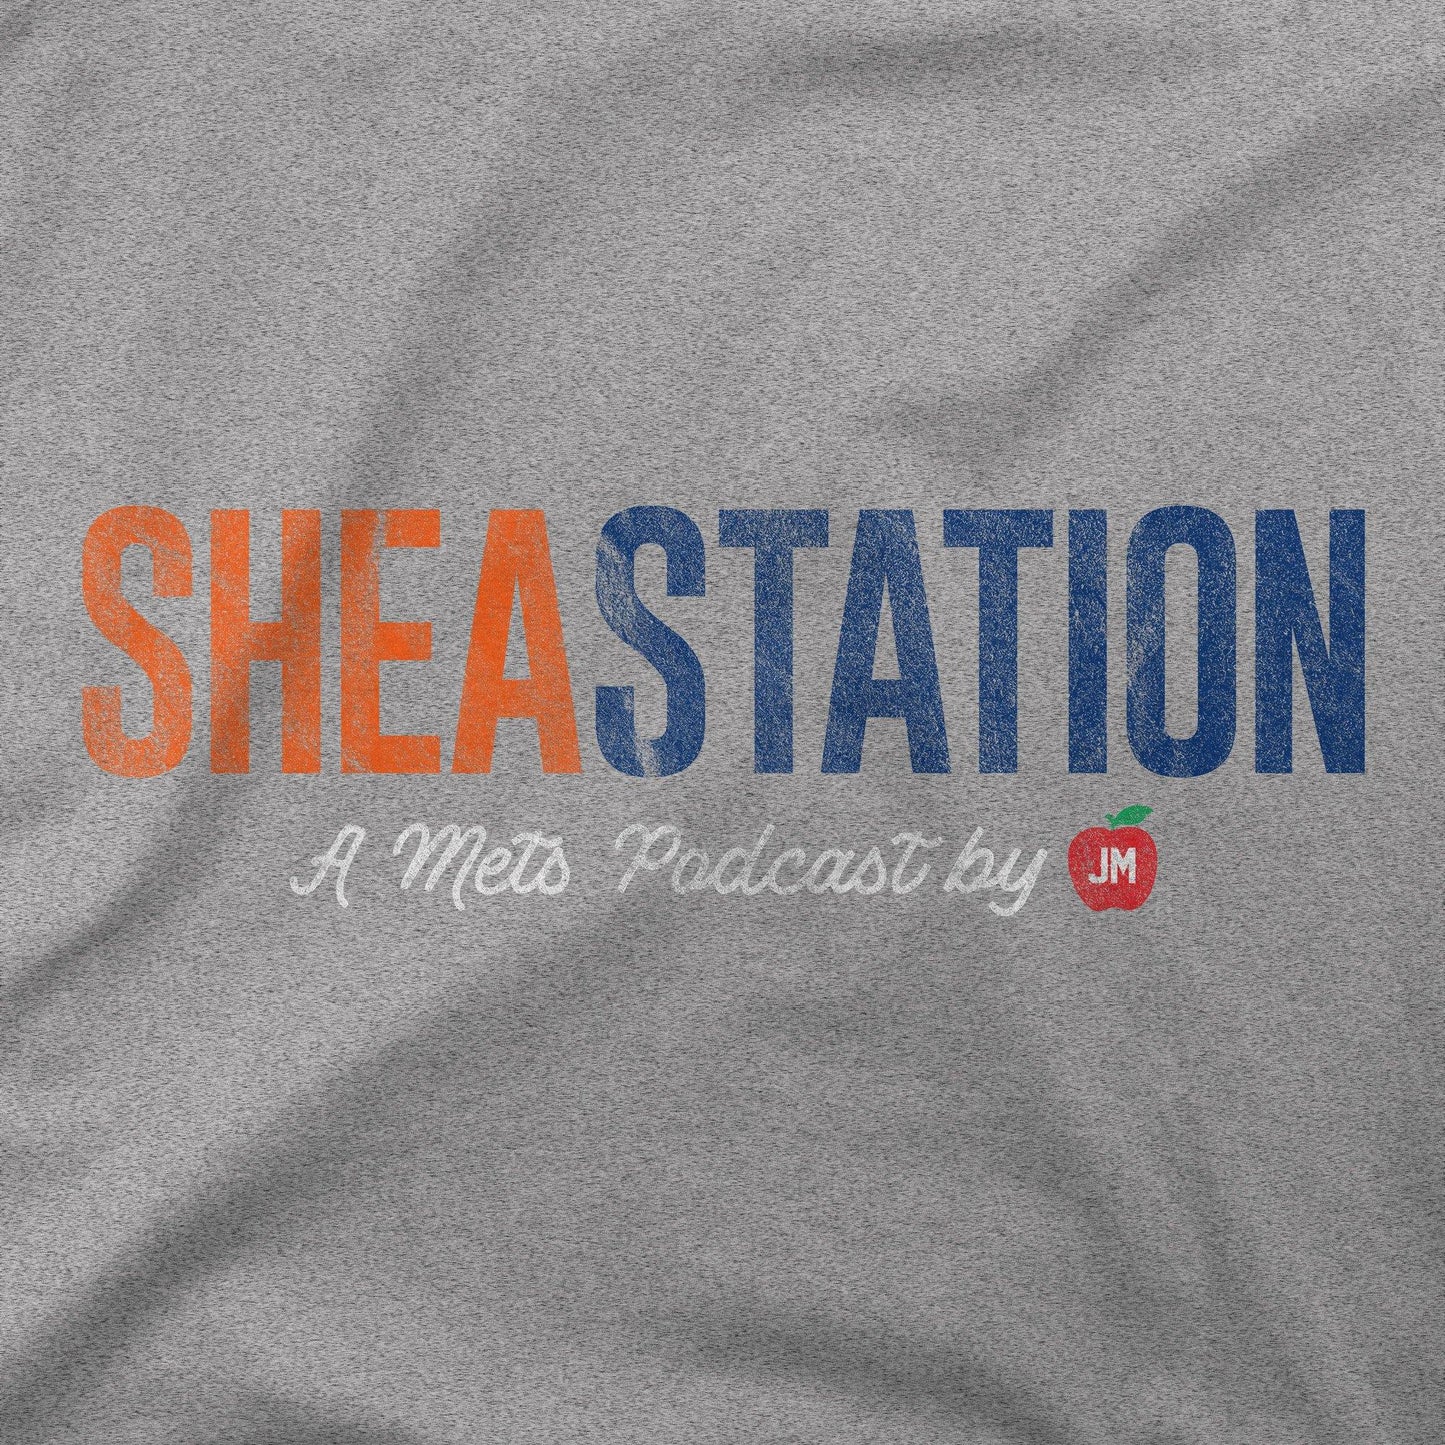 Shea Station | A Mets Podcast By JM | T-Shirt - Jomboy Media